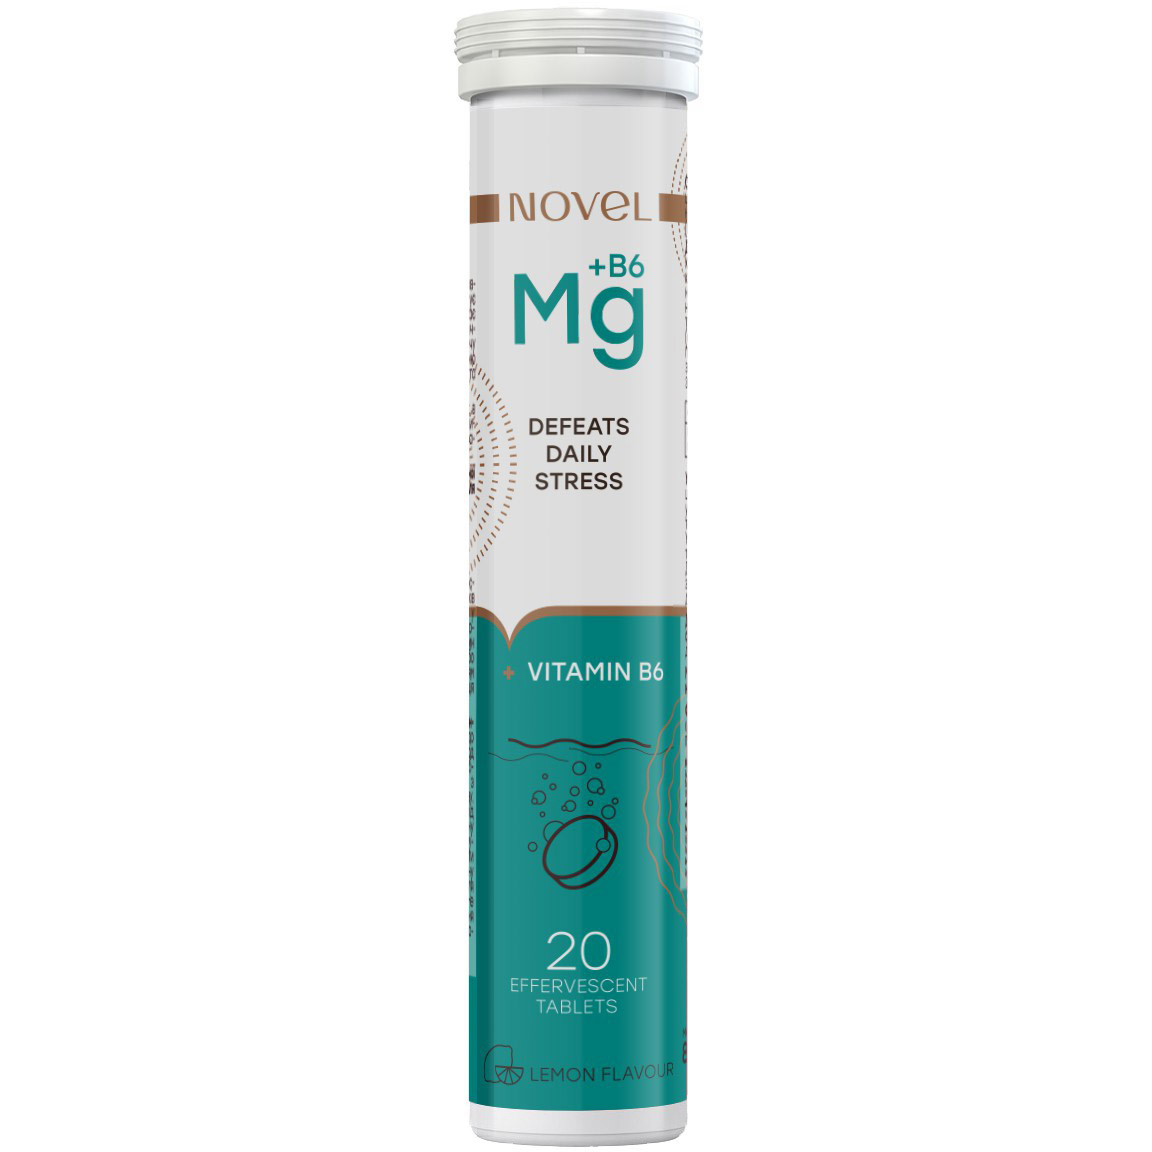 Витаминно-минеральный комплекс Novel Defeats Daily Stress Magnesium + Vitamin B6 20 таблеток - фото 1